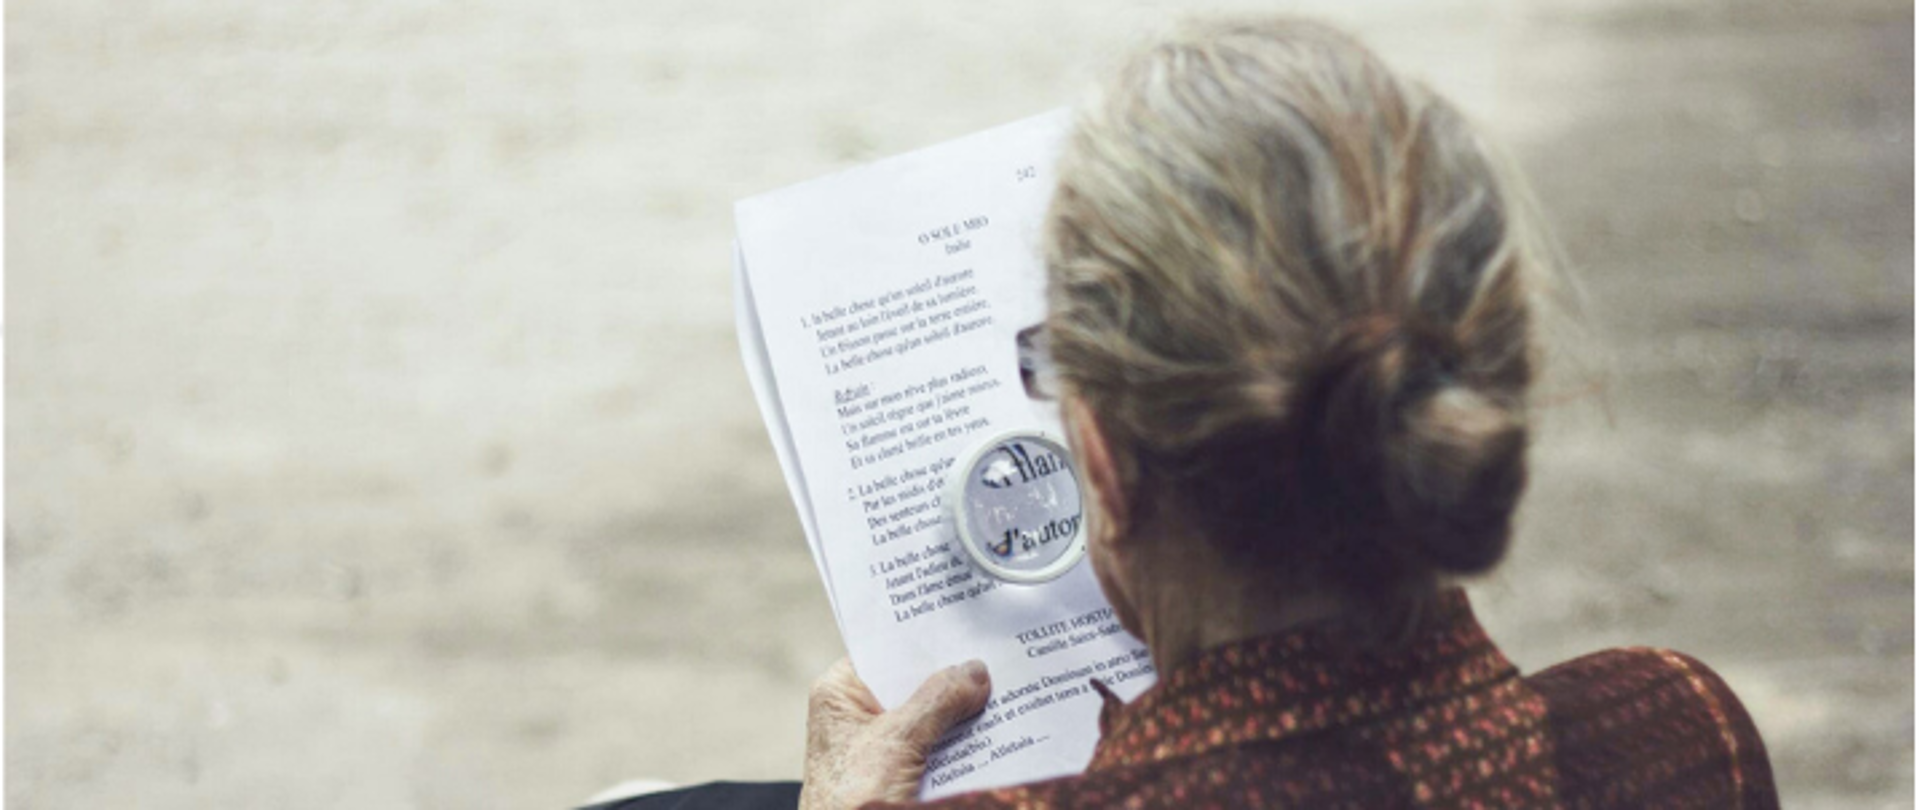 Zdjęcie starszej pani siedzącej i czytającej dokument pod lupą. W rogach loga GovTech, Polskiej Agencji Prasowej i napius #ZwalczWirusaKodem oraz #FakeHunter.